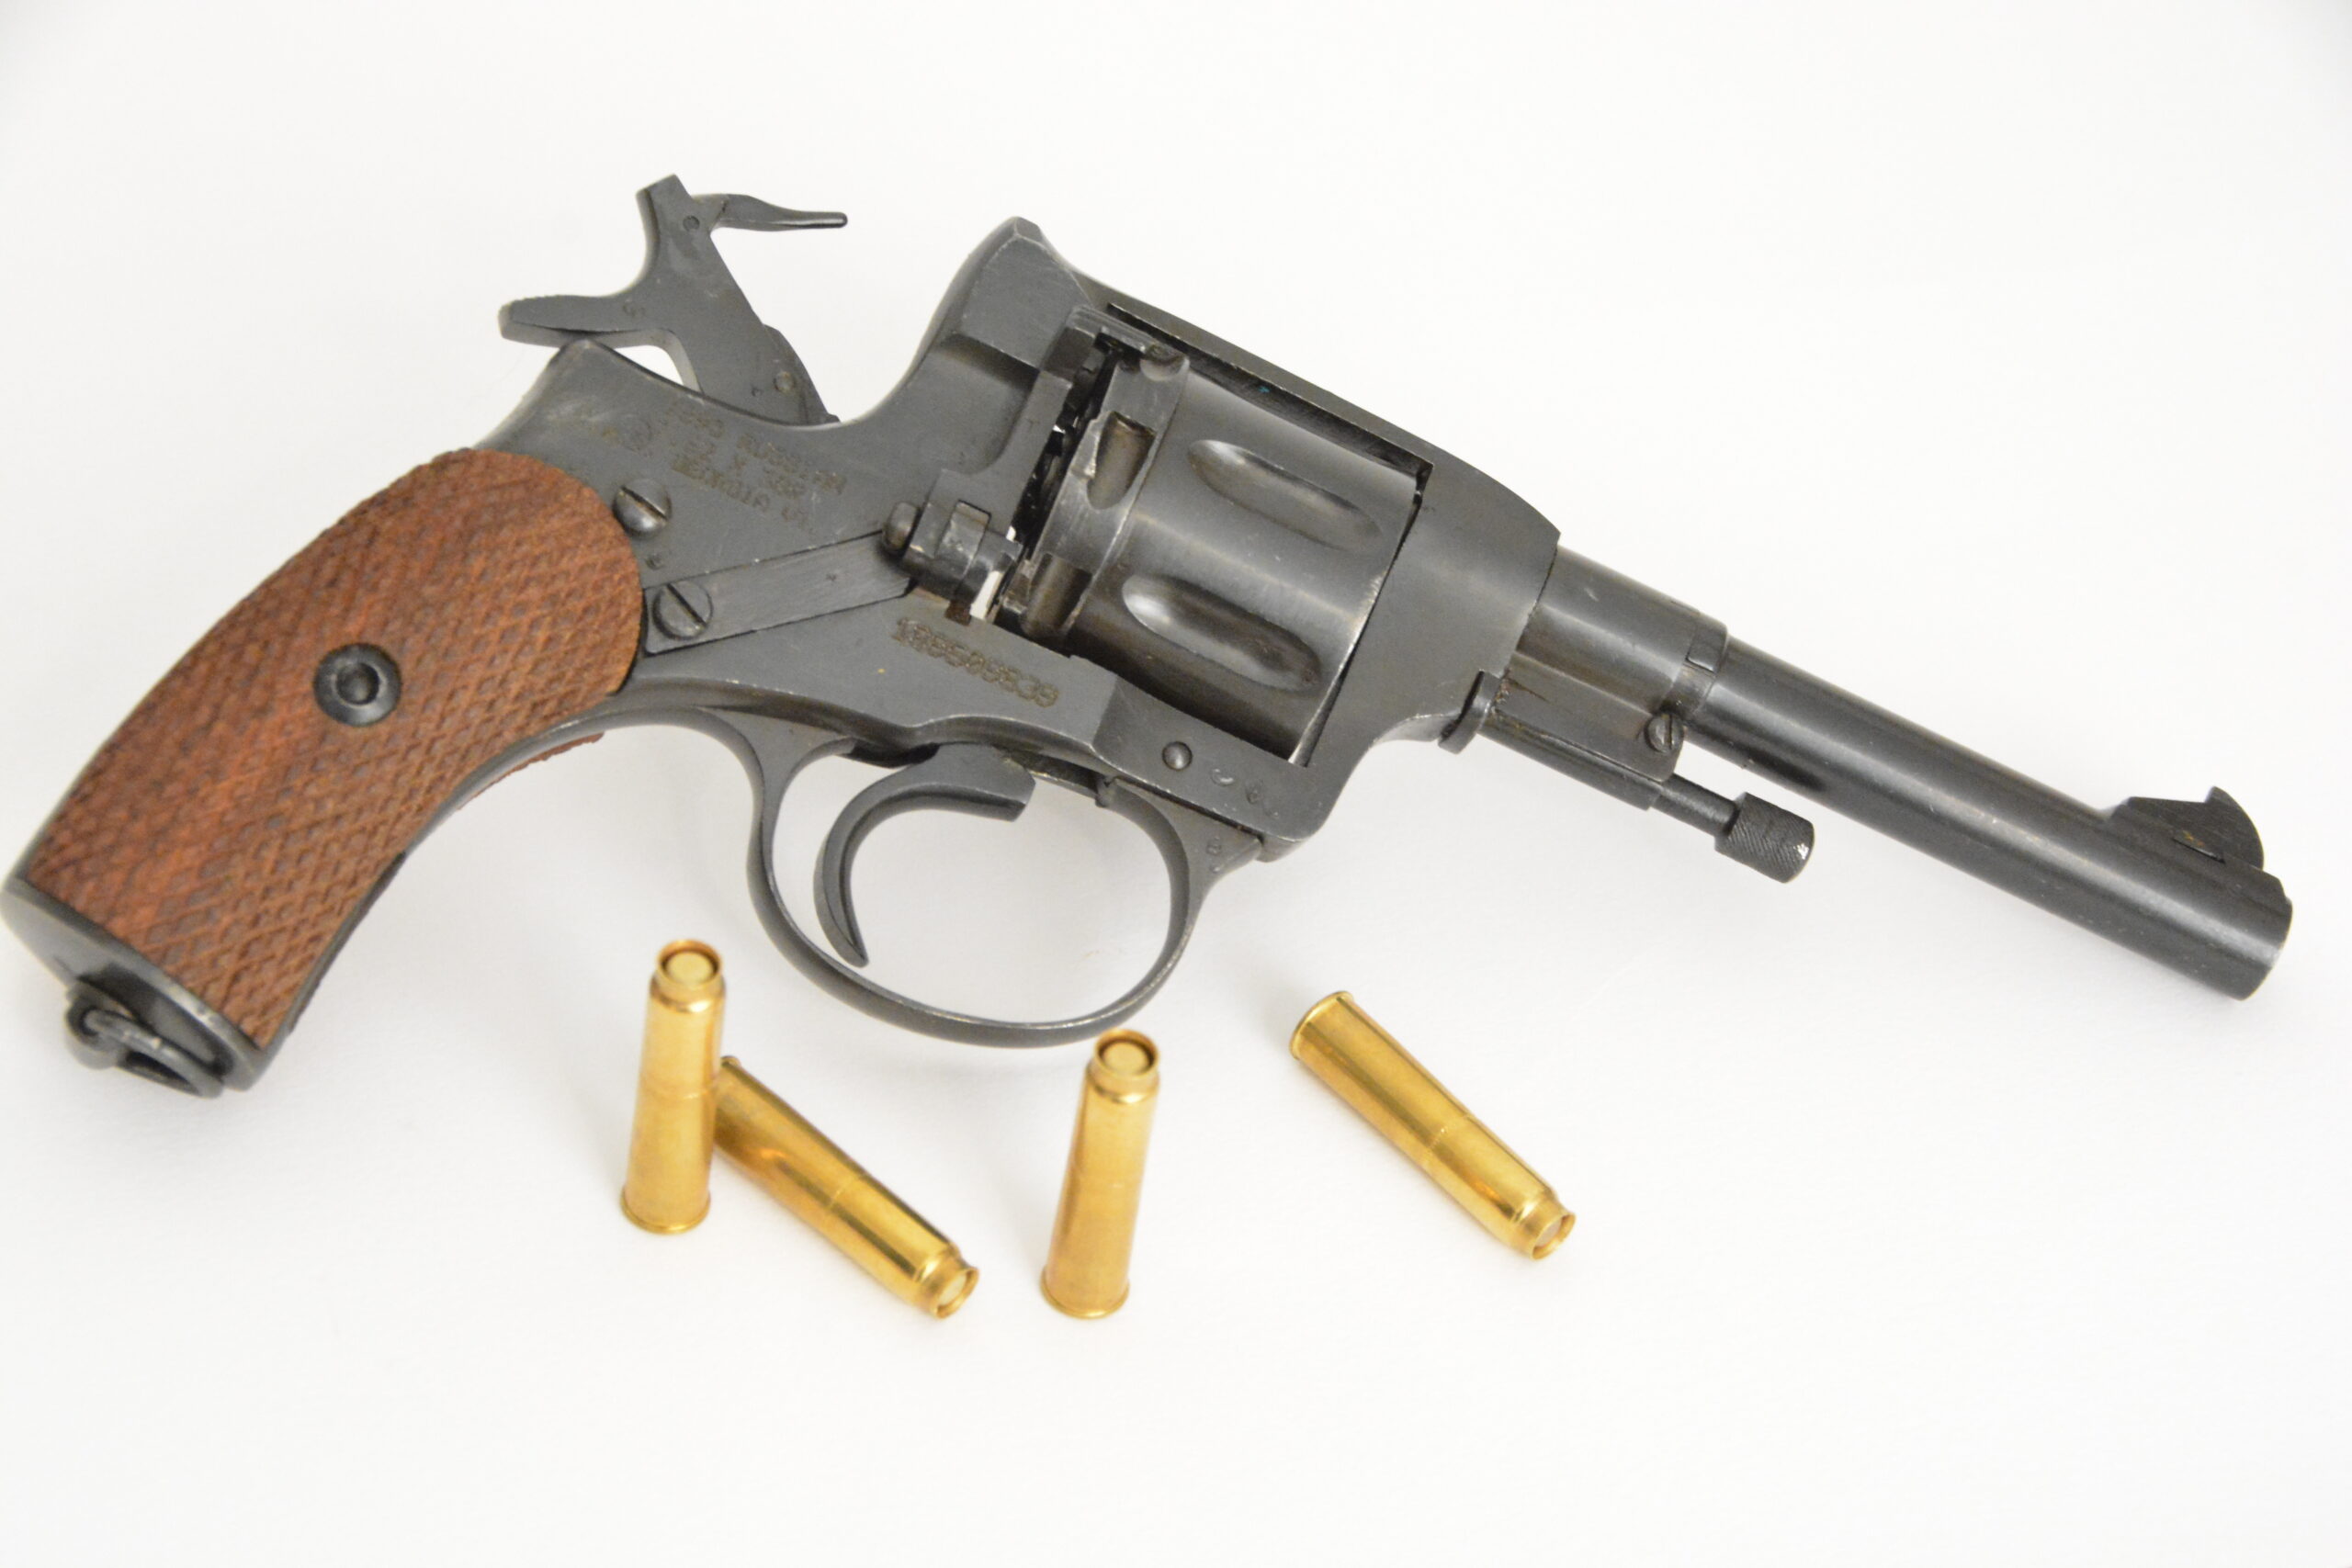 The Nagant revolver.